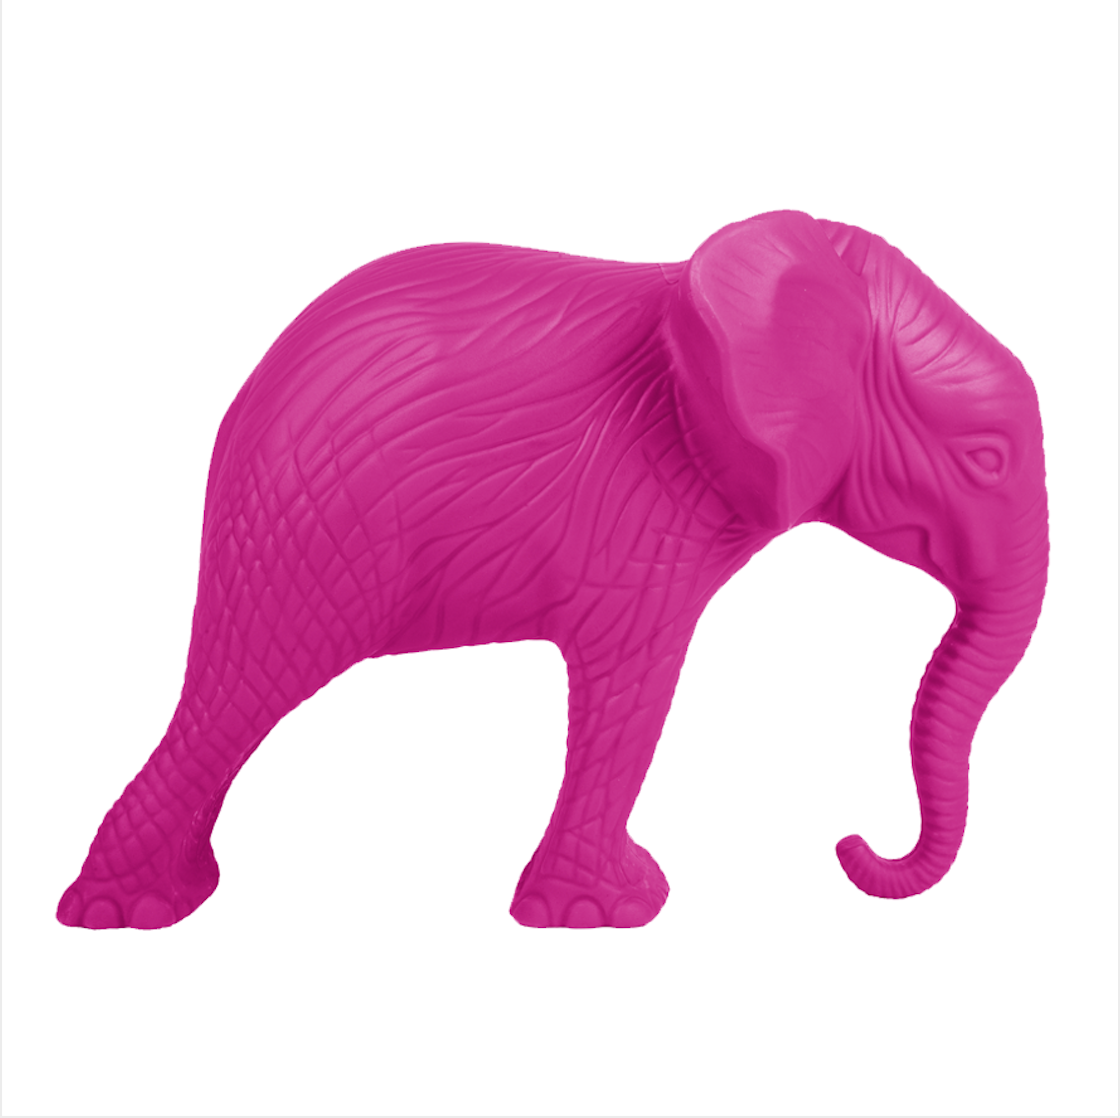 Giant Elephant – Cracking Art